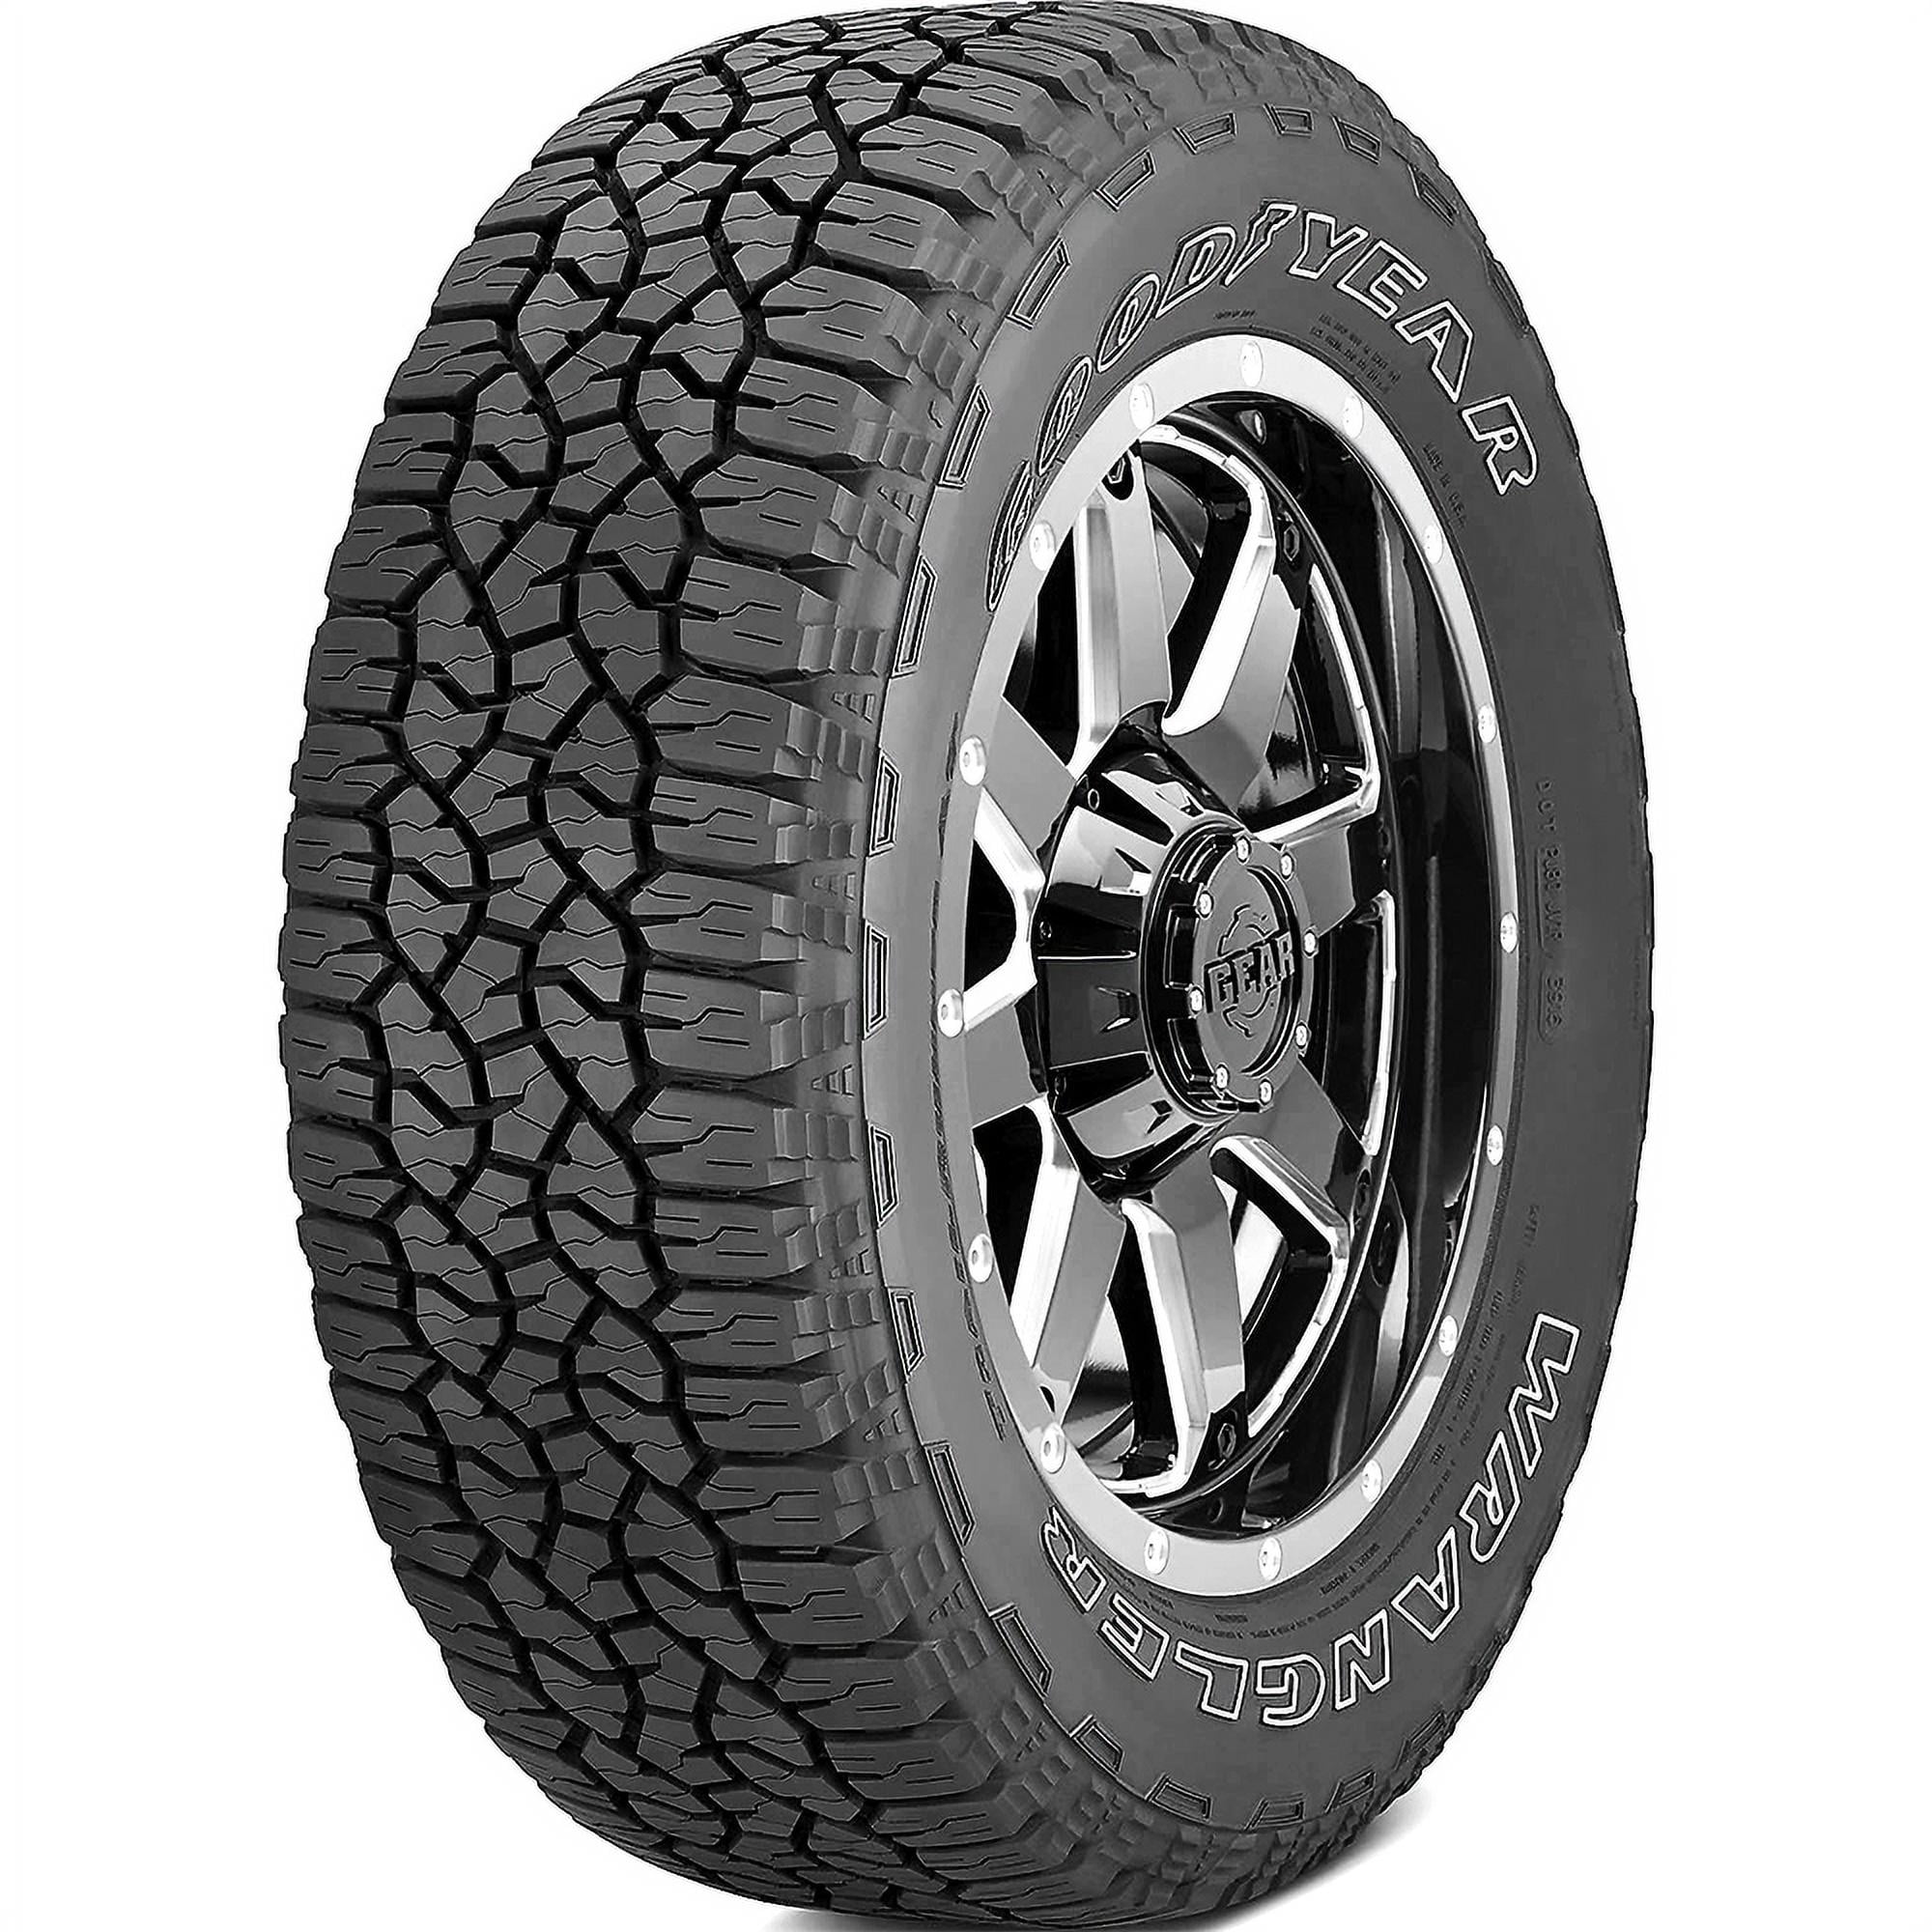 Goodyear Wrangler TrailRunner AT 255/70R16 111 S Tire 